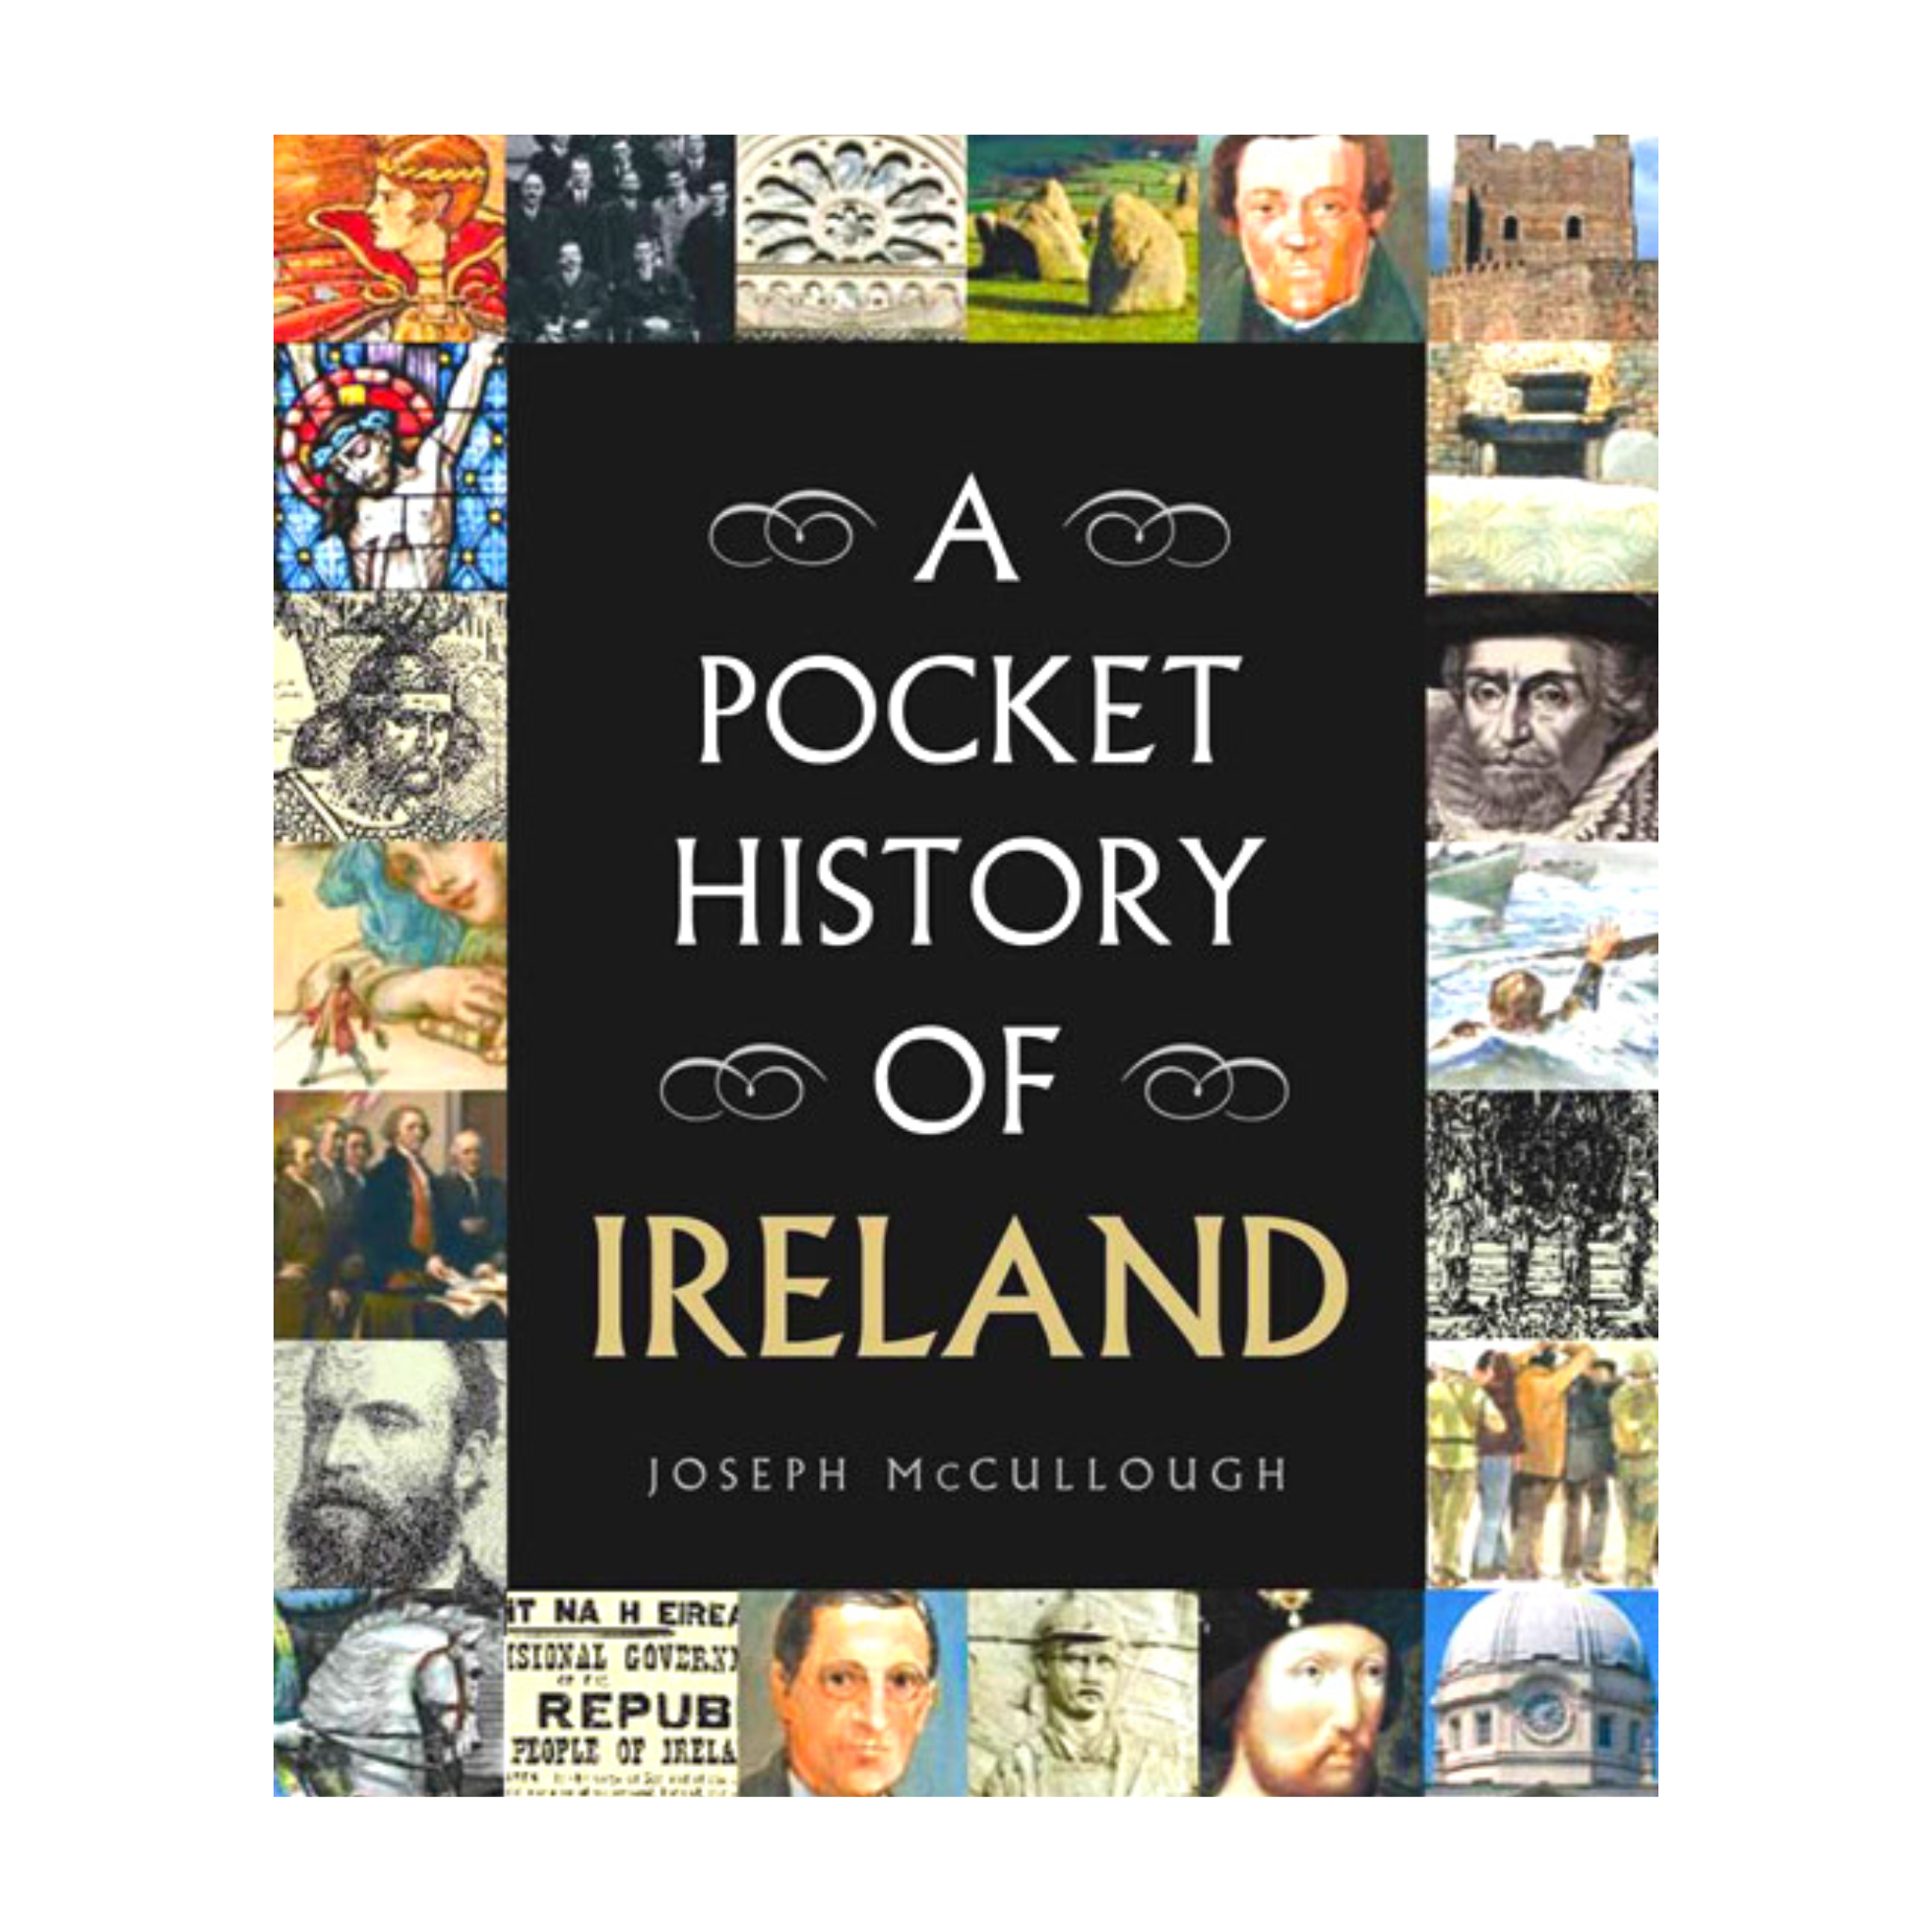 Pocket History of Ireland